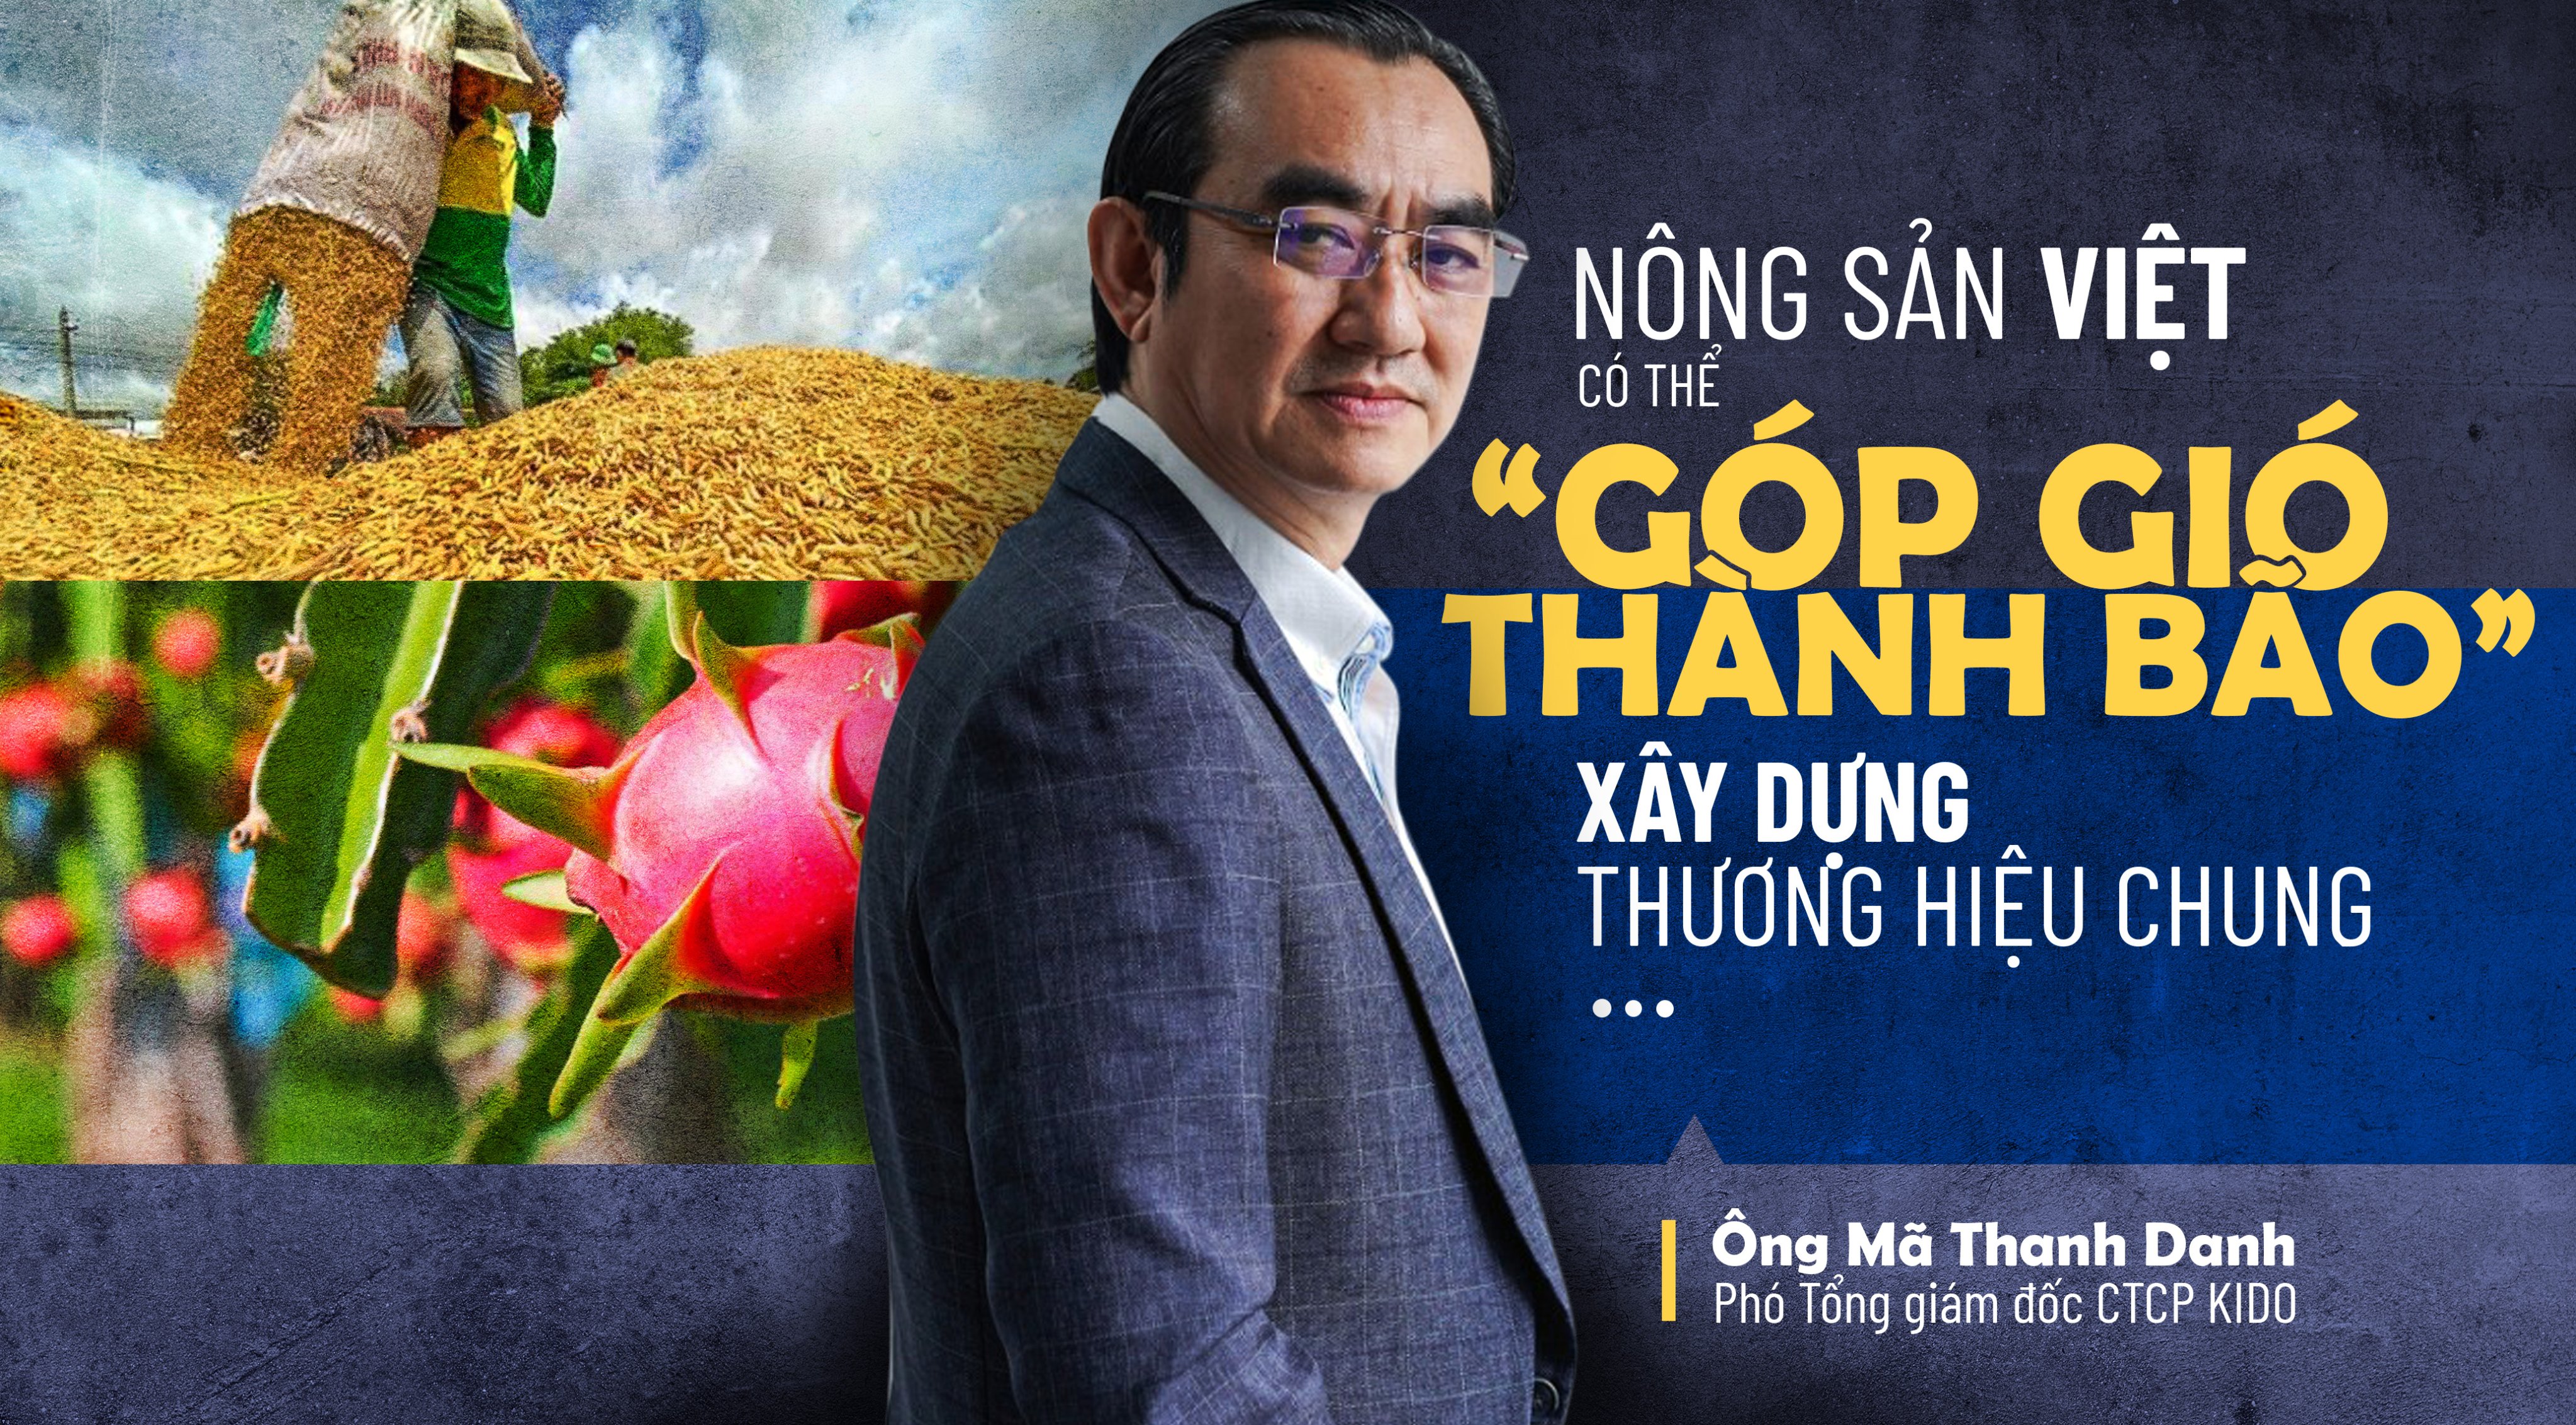 Nông sản Việt có thể ‘góp gió thành bão’ xây dựng thương hiệu chung